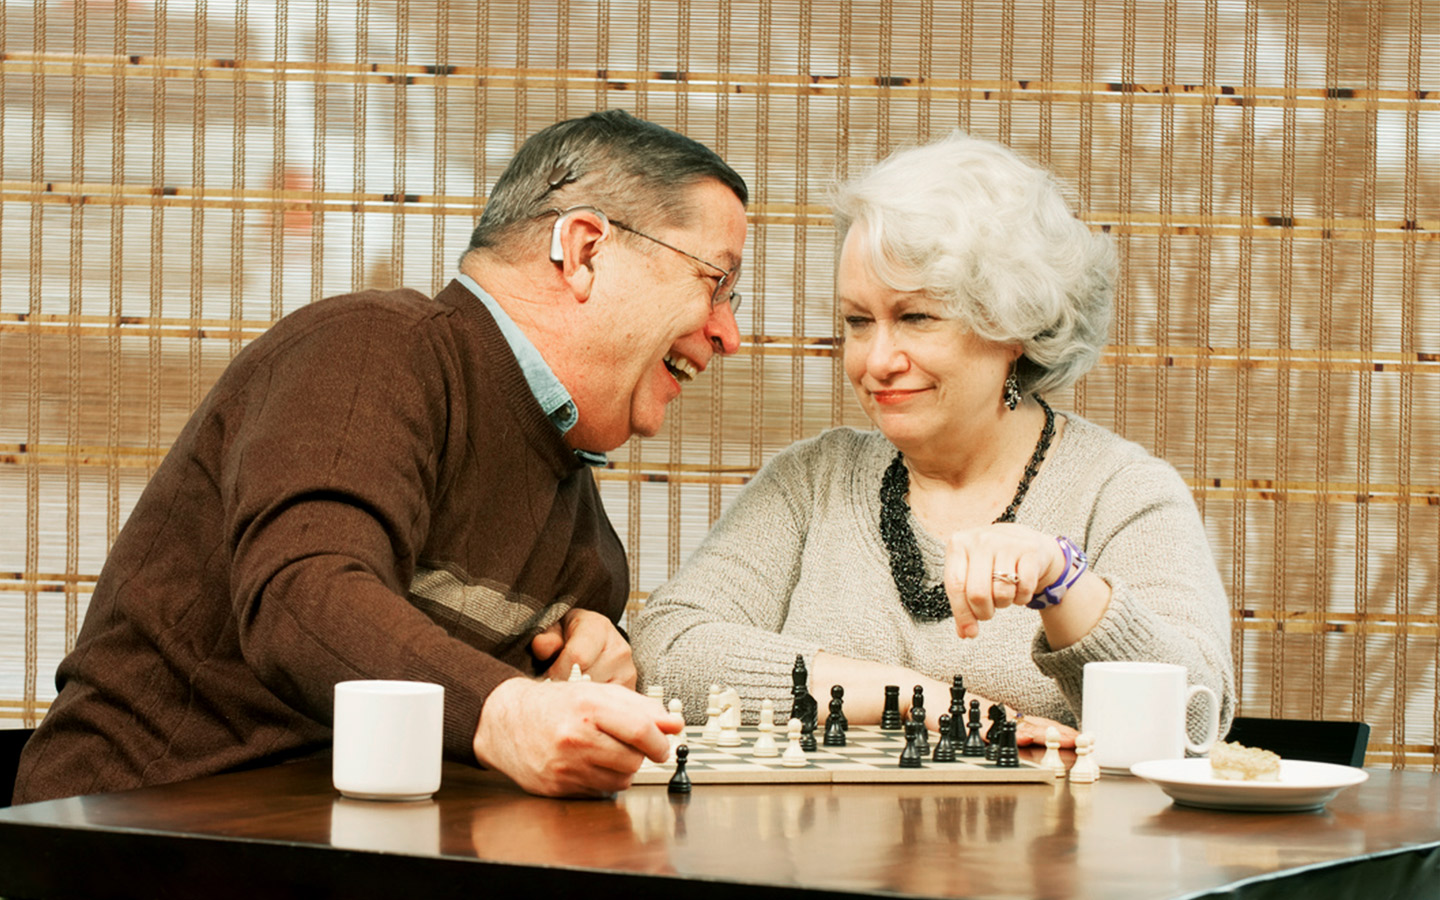 Bill, usuario de un implante, y Pam disfrutan de una partida de ajedrez